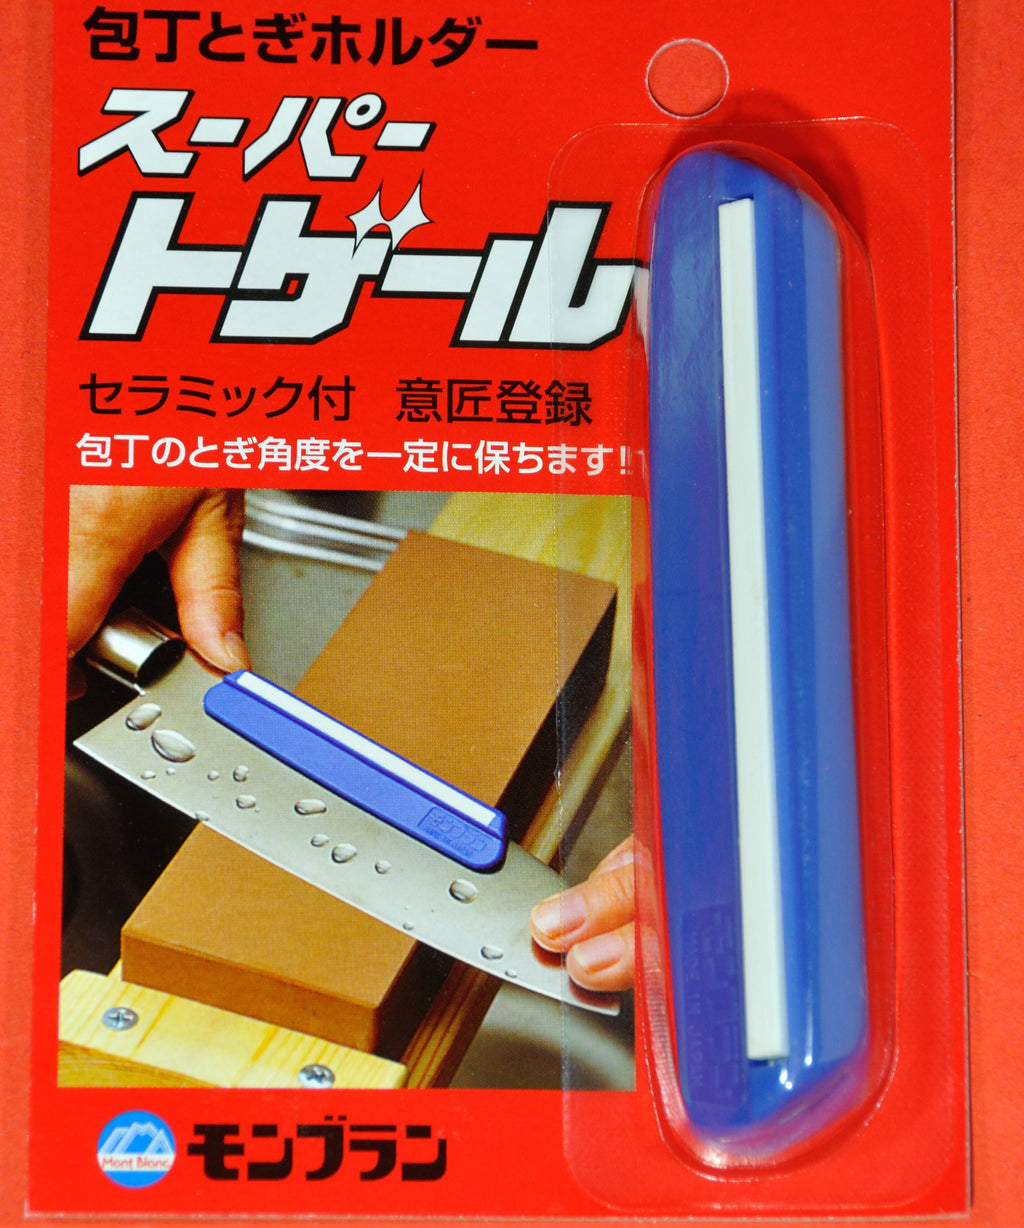 Knife sharpener ceramic guide for waterstone whetstone Japan japanese